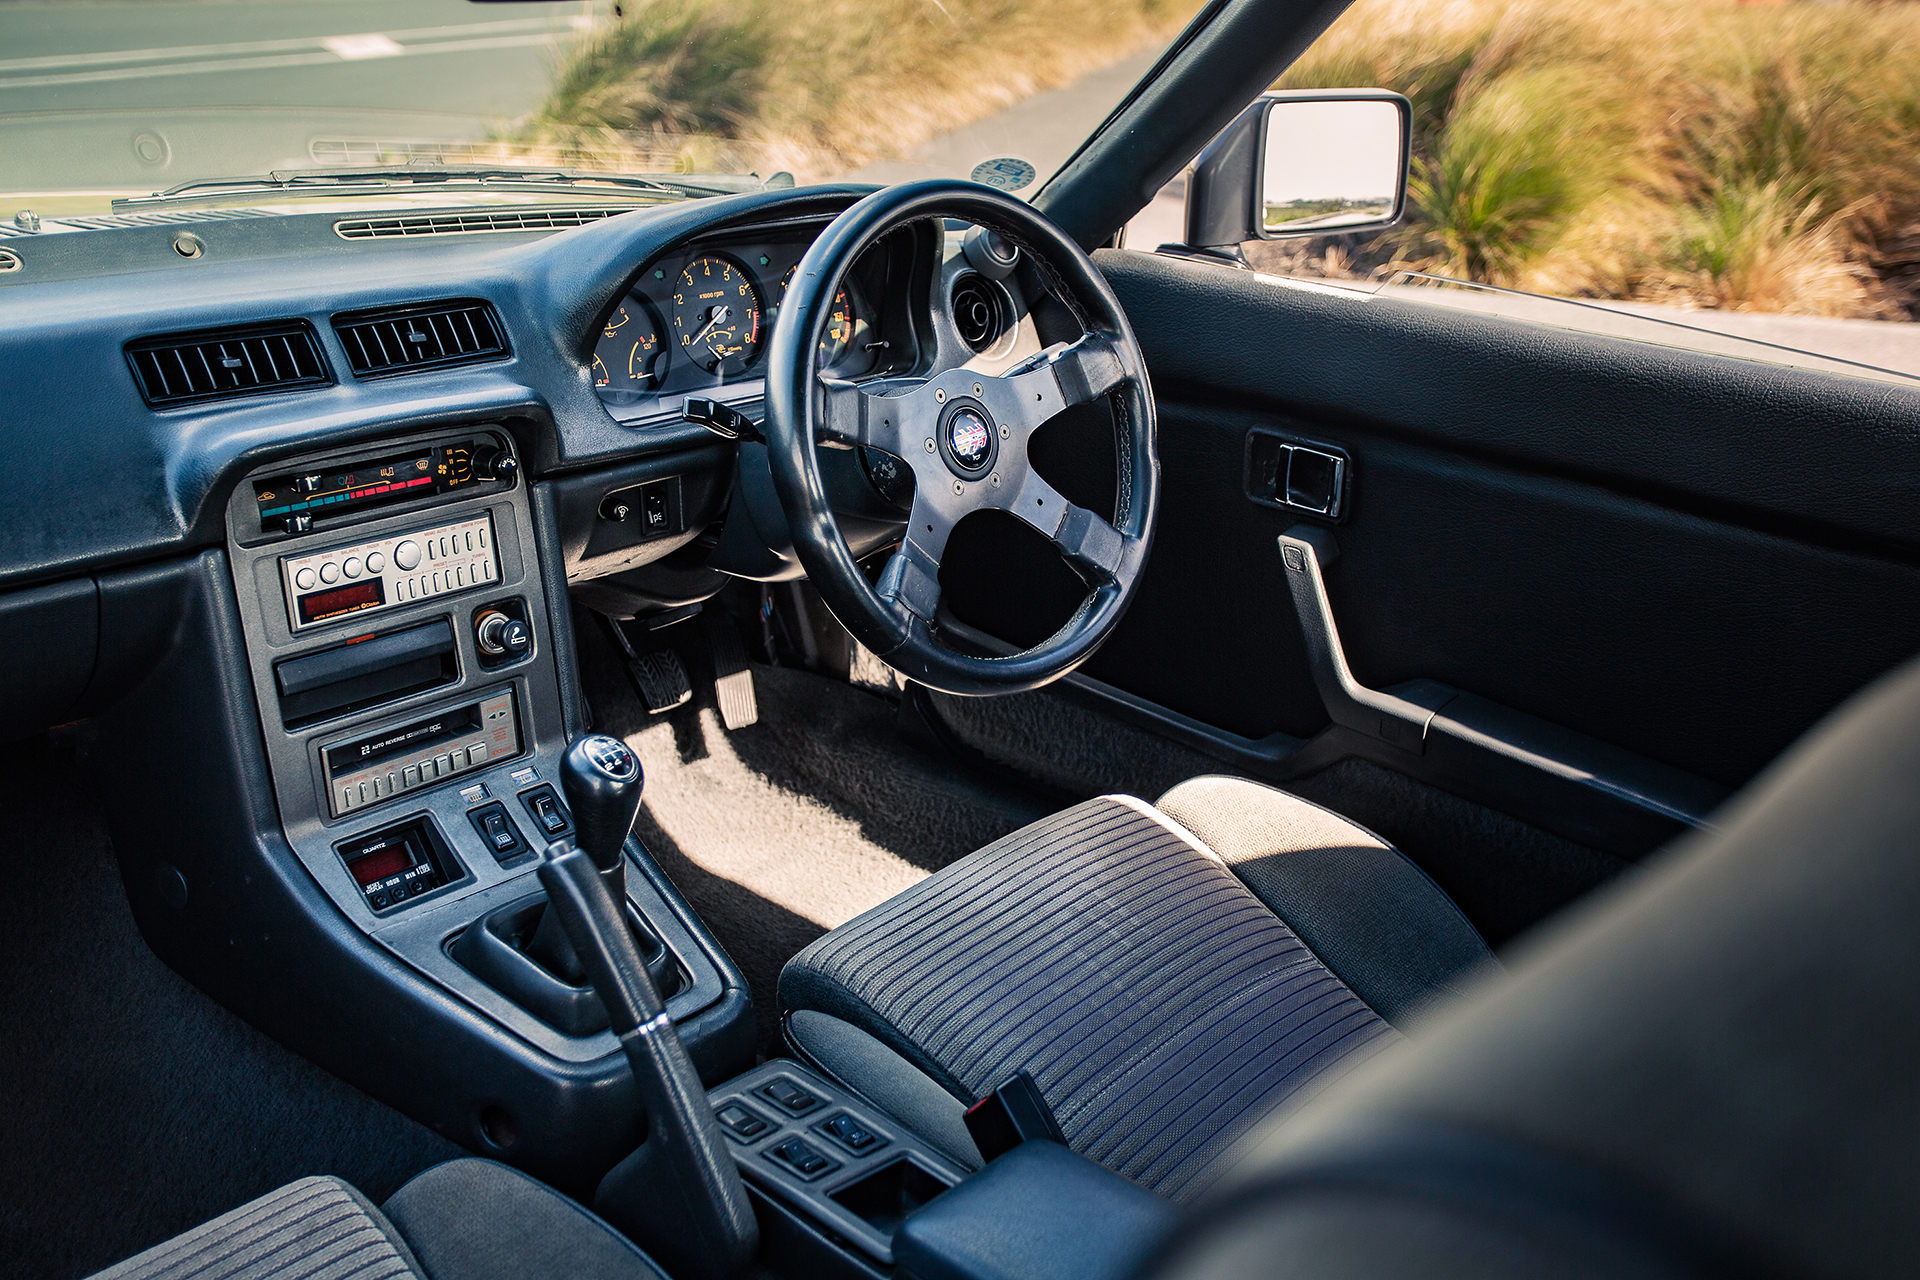 1984-Mazda-RX7-Turbo-interior_www